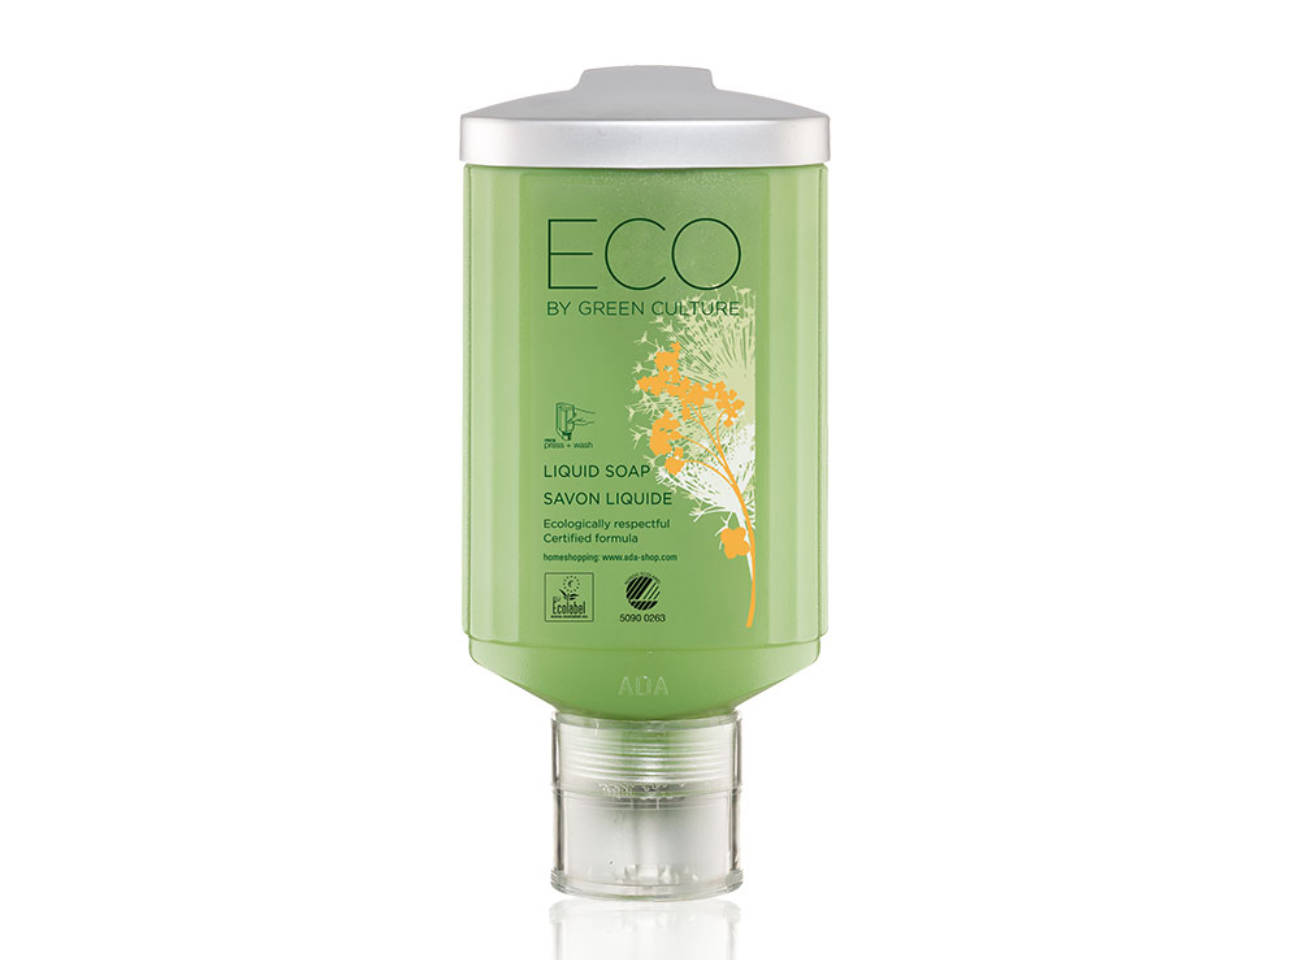 Eco by Green Culture Flüssigseife - press+wash, 300 ml